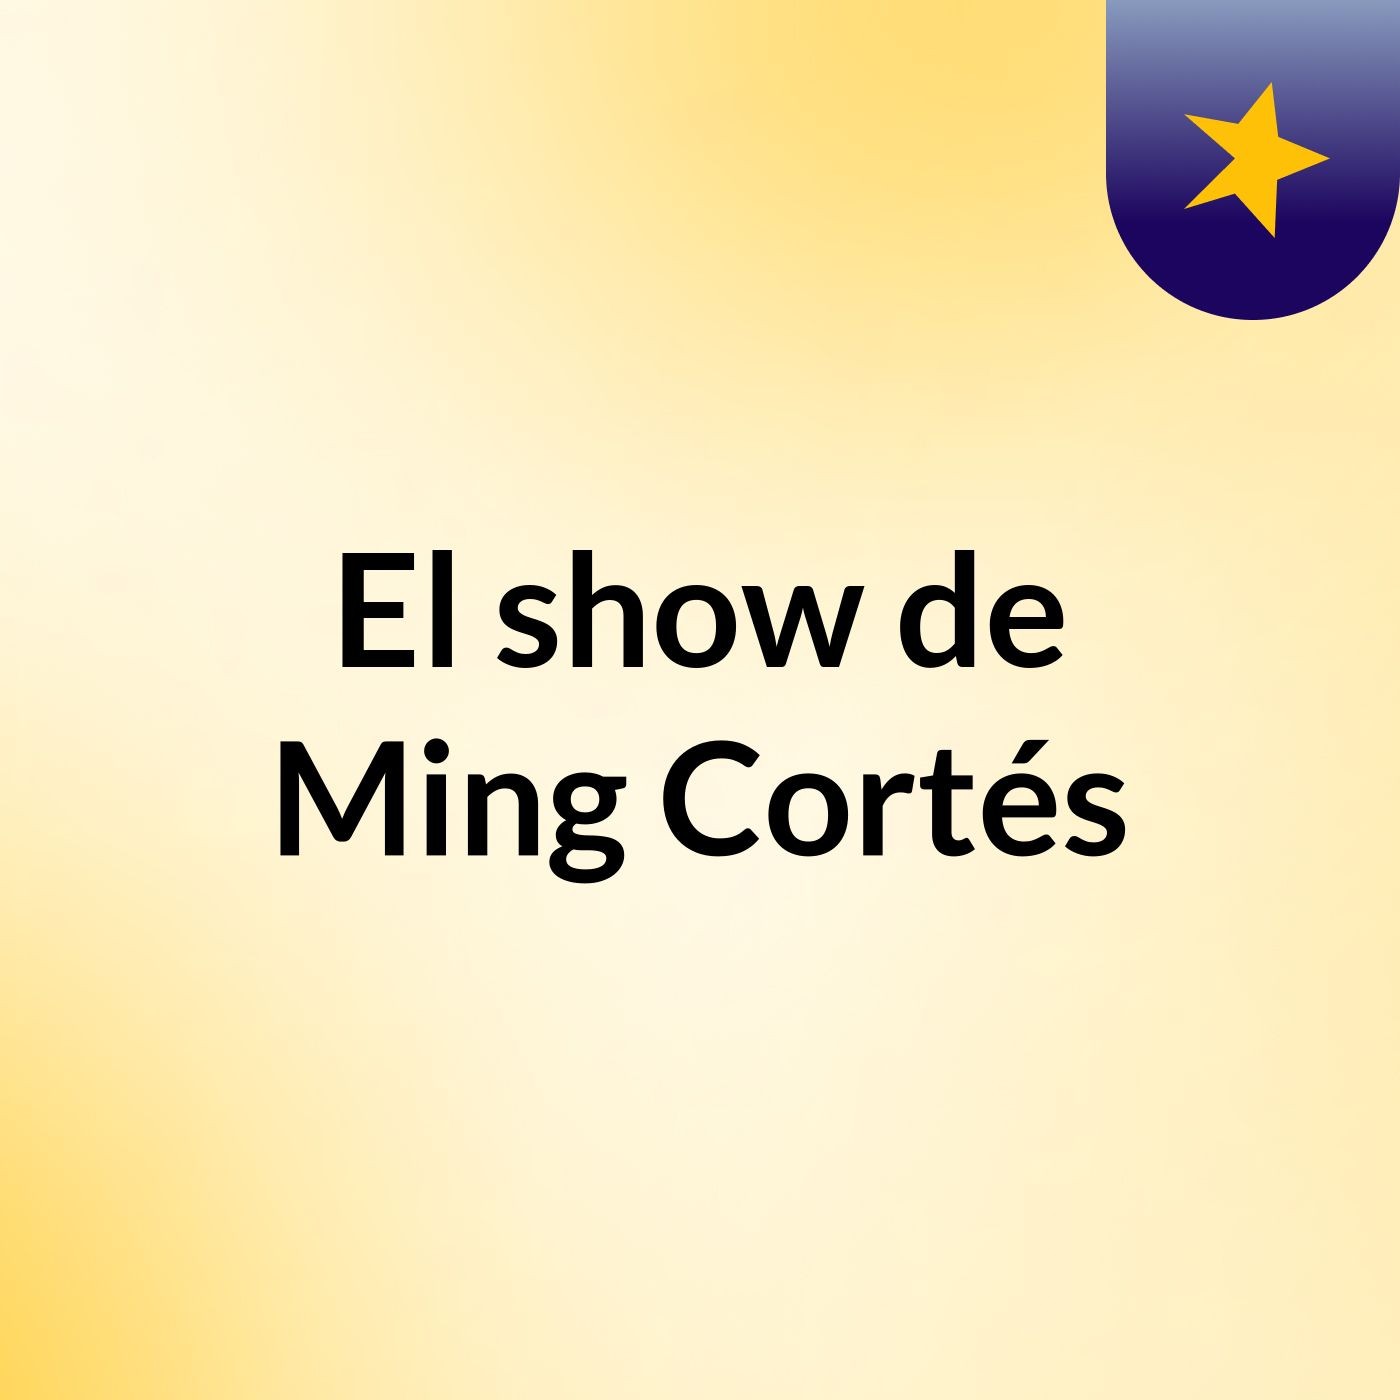 El show de Ming Cortés